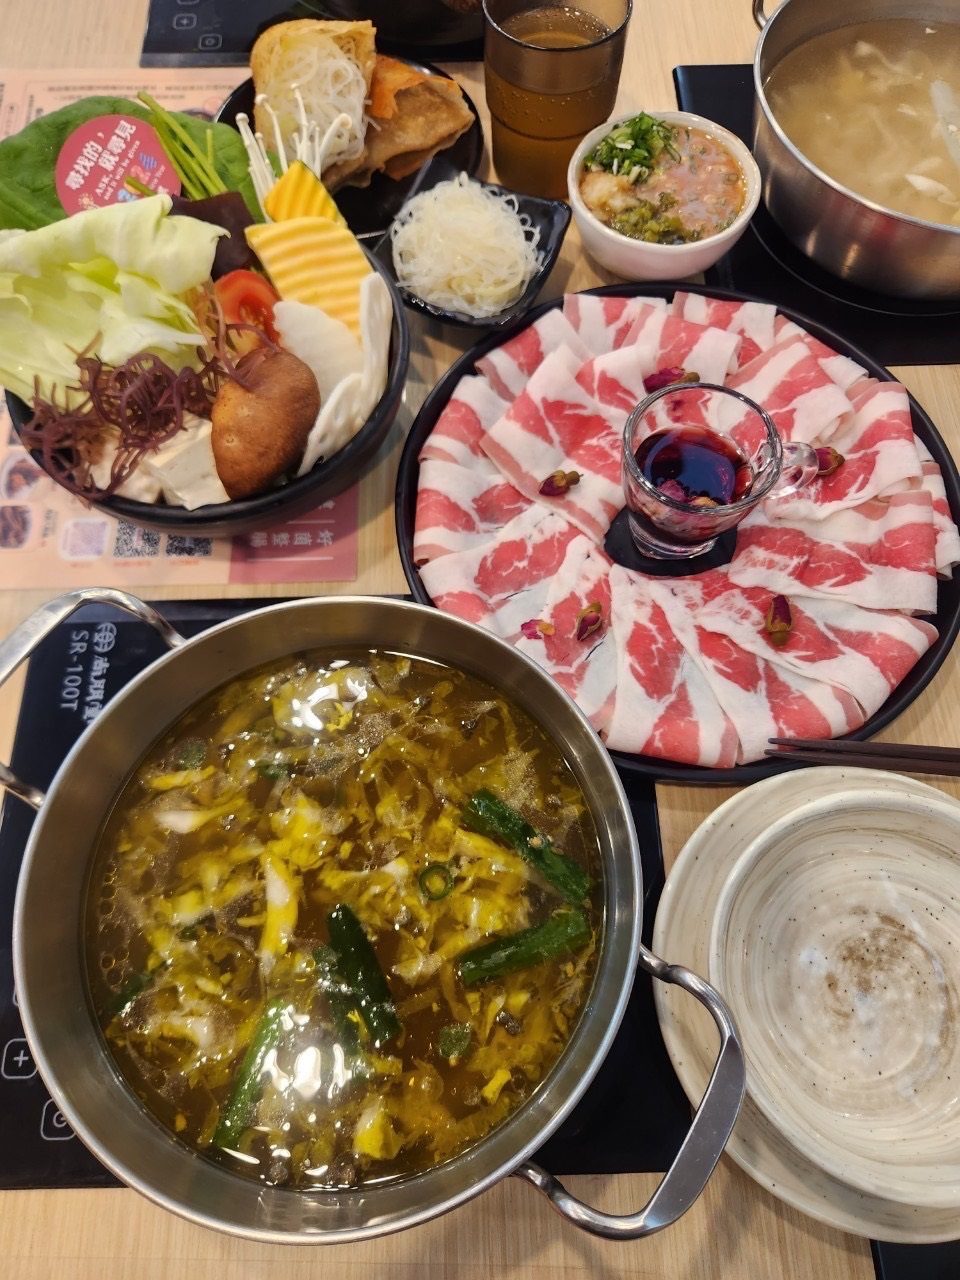 侯黑鍋物 個人酸菜鍋物 連續5年榮獲台灣美食獎項